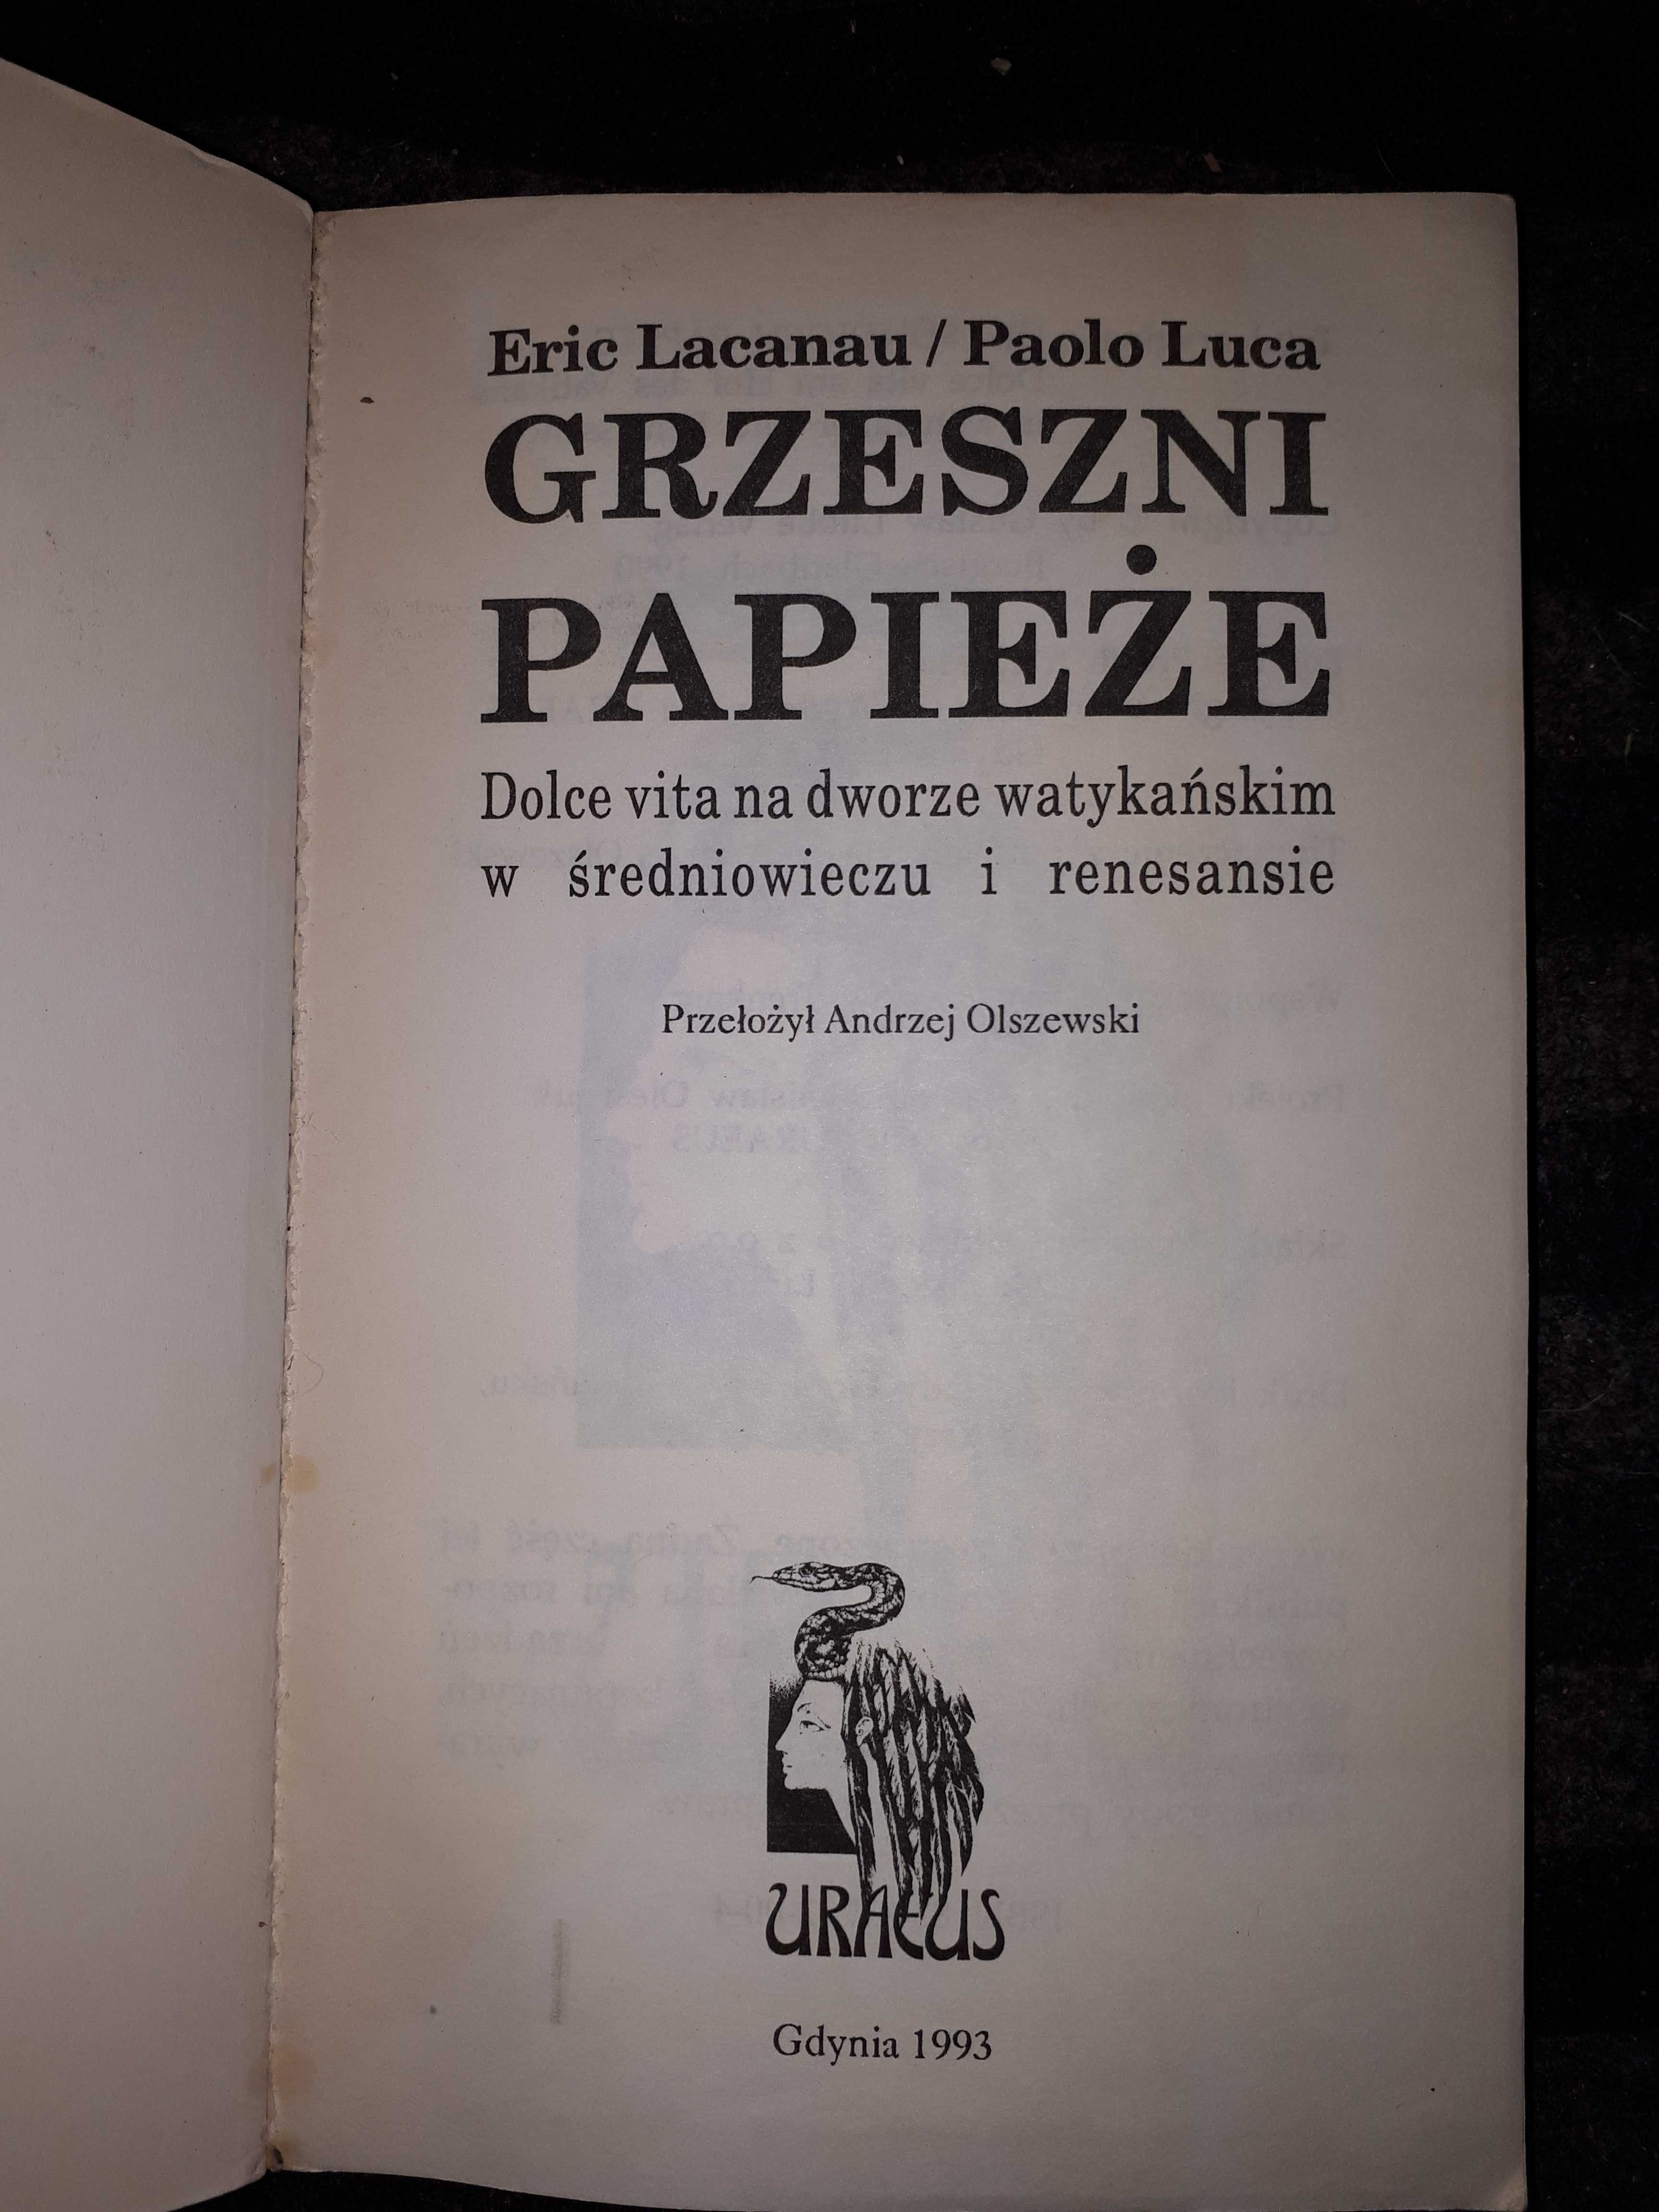 Książka Grzeszni papieże dolce vita na dworze -Eric Lacanau Paolo Luca